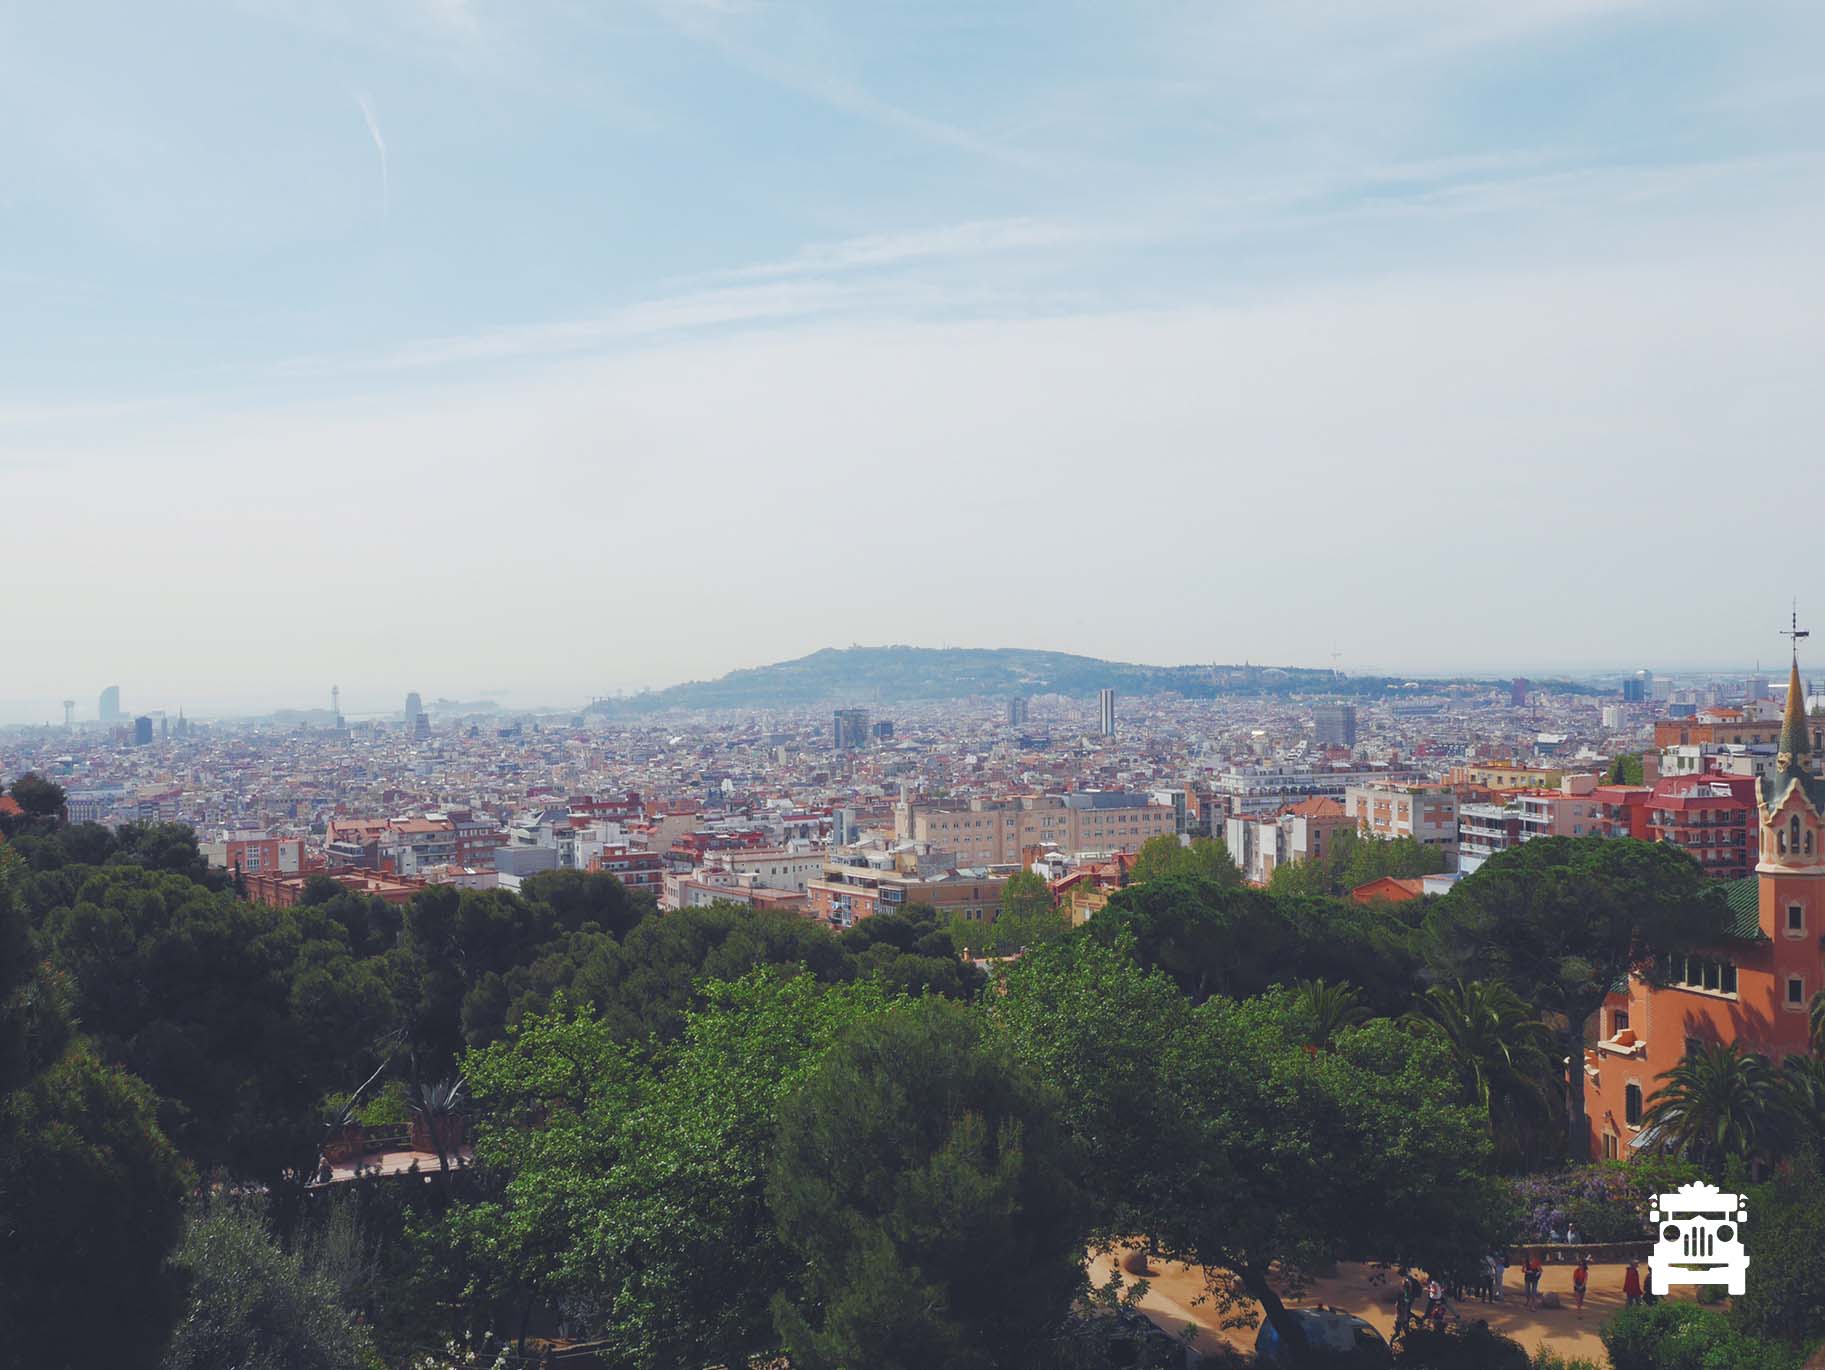 Ok an even better view of Barcelona